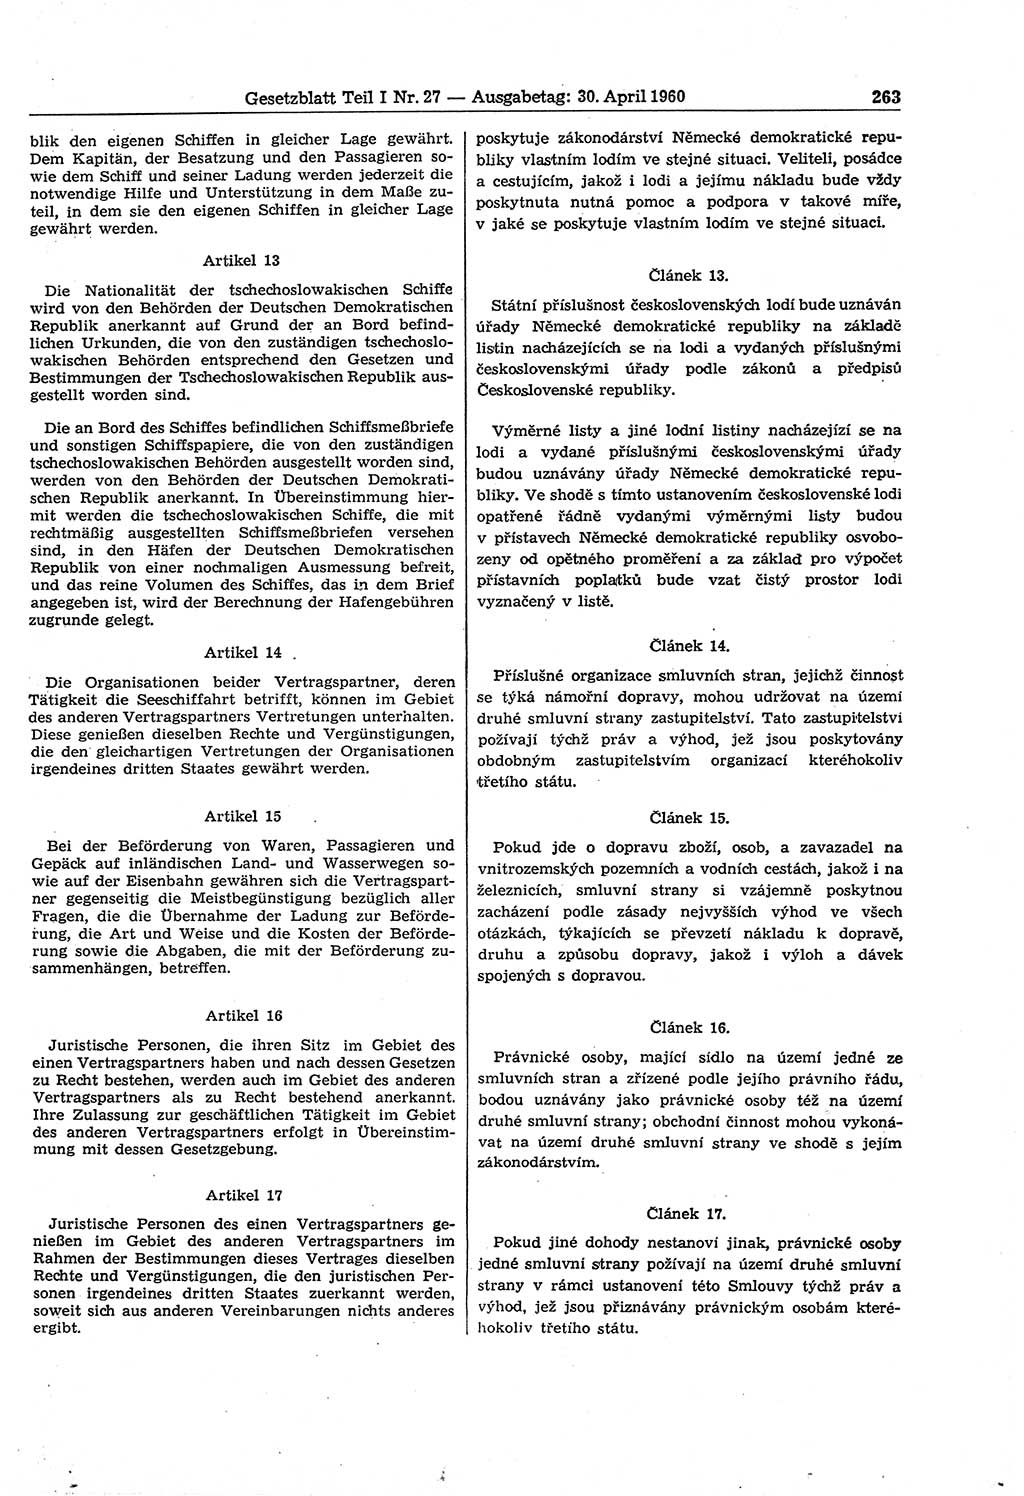 Gesetzblatt (GBl.) der Deutschen Demokratischen Republik (DDR) Teil Ⅰ 1960, Seite 263 (GBl. DDR Ⅰ 1960, S. 263)